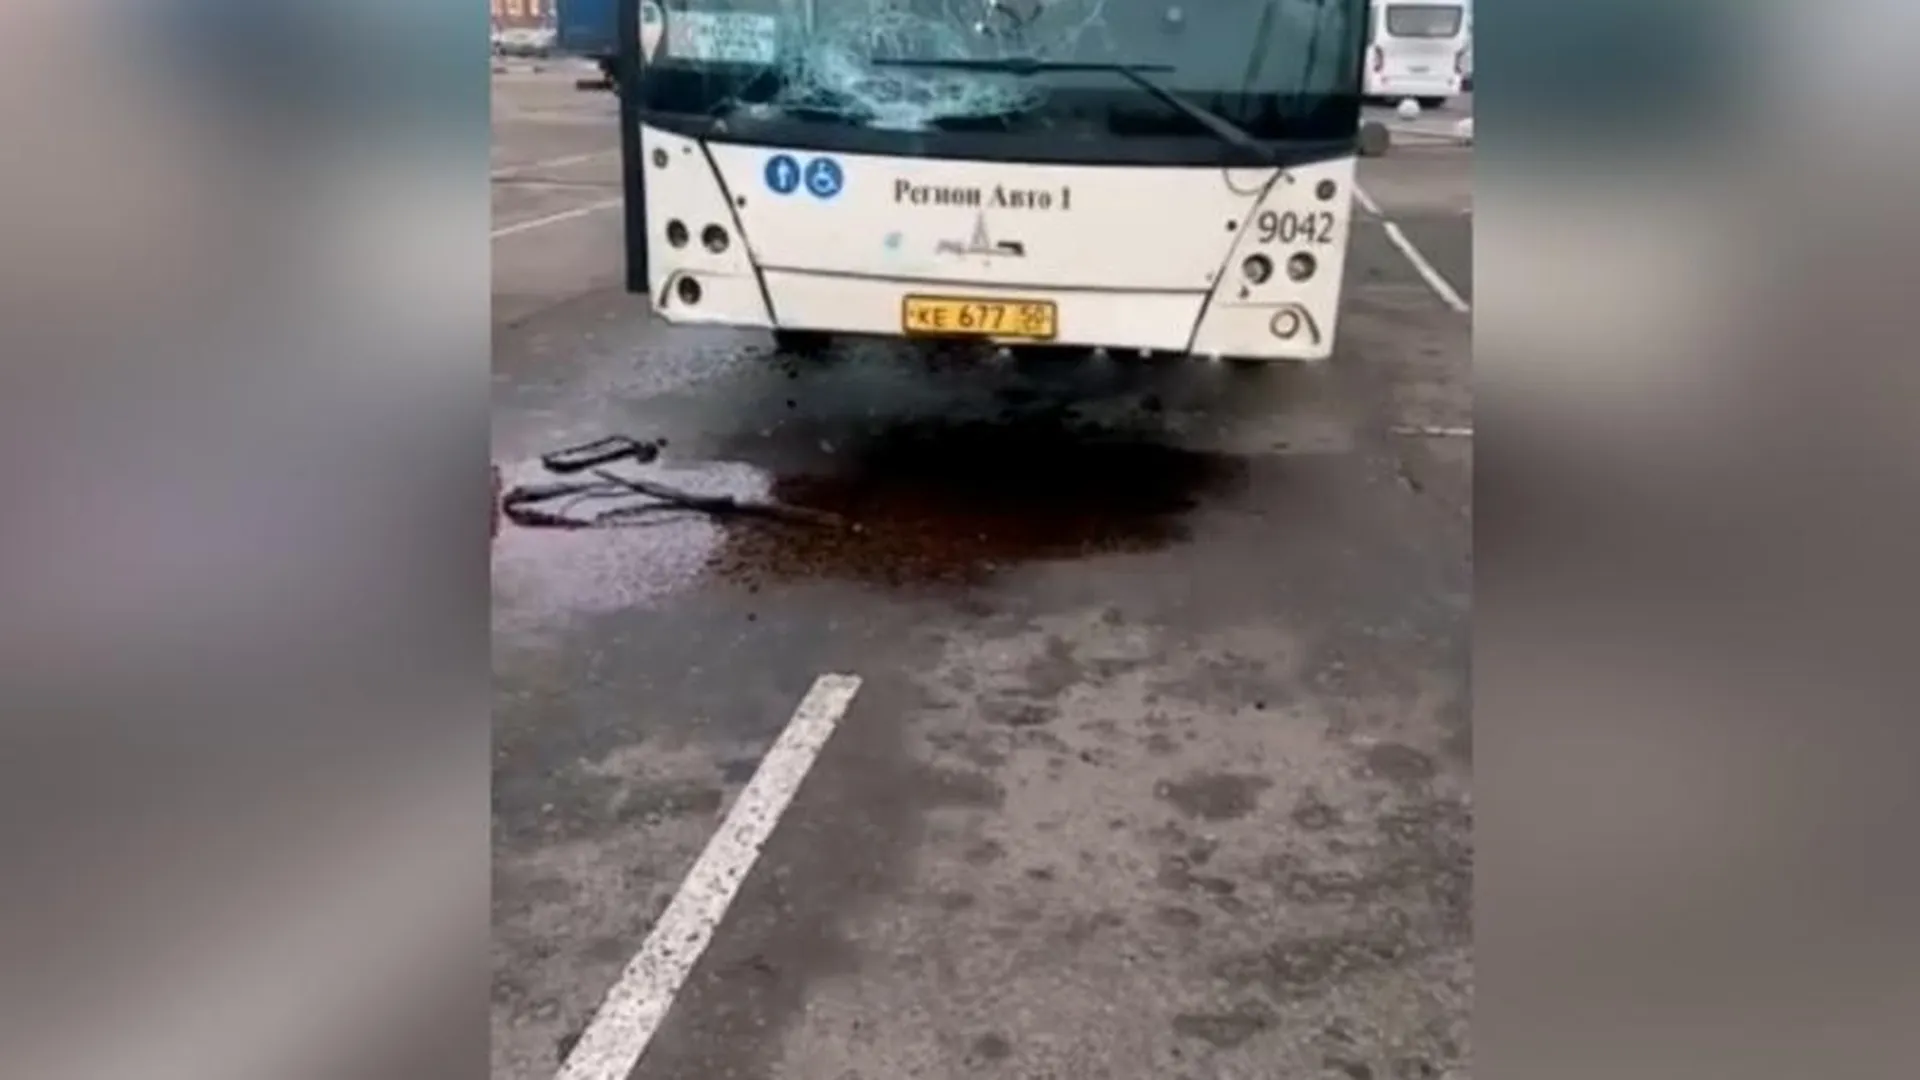 Дал покататься: маршрутчик разбил автобус своего коллеги в Химках